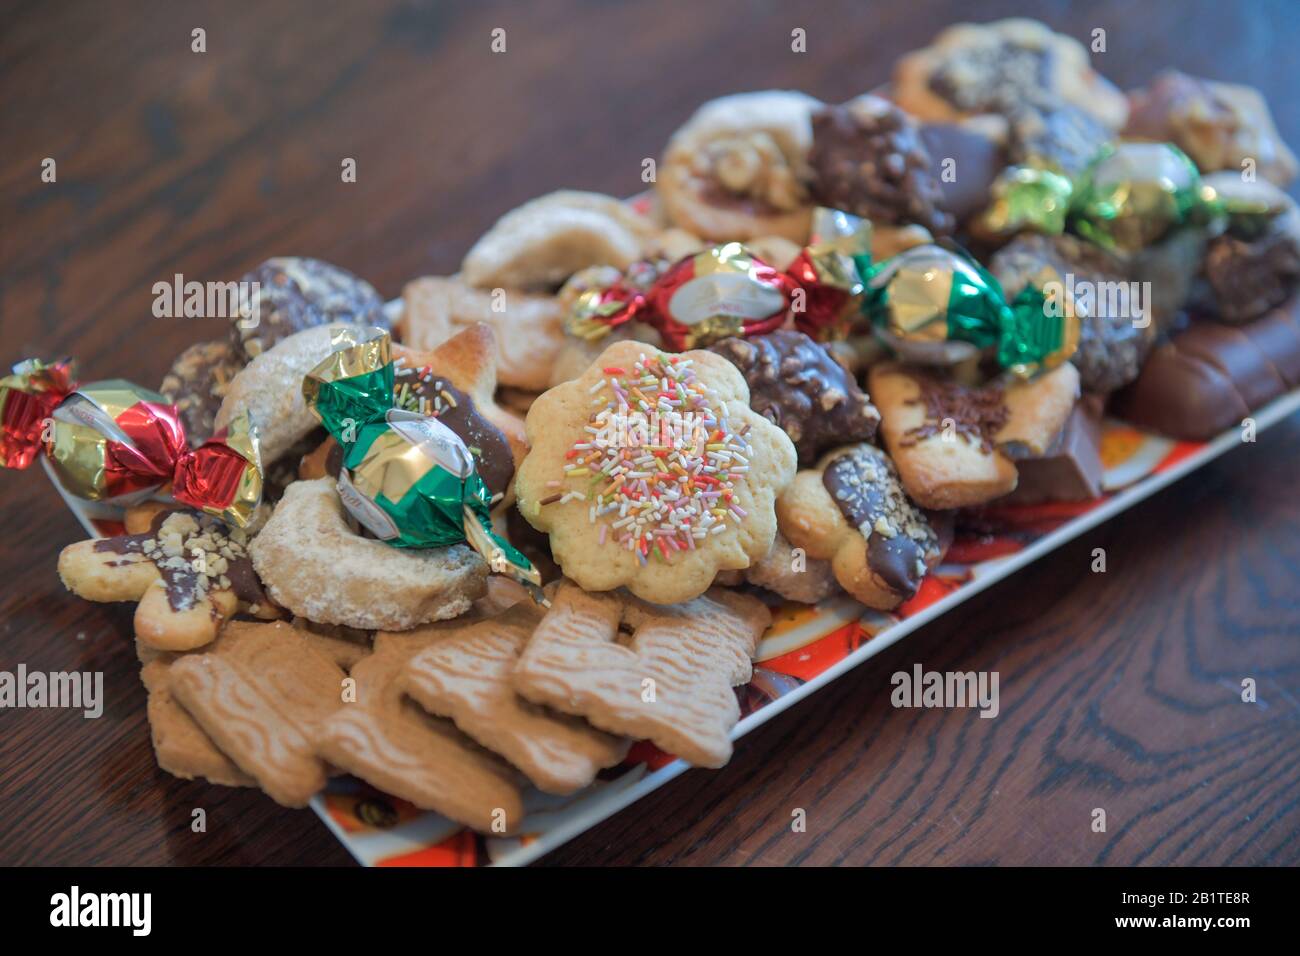 Bunter Teller zu Weihnachten mit Keksen Stockfotografie - Alamy